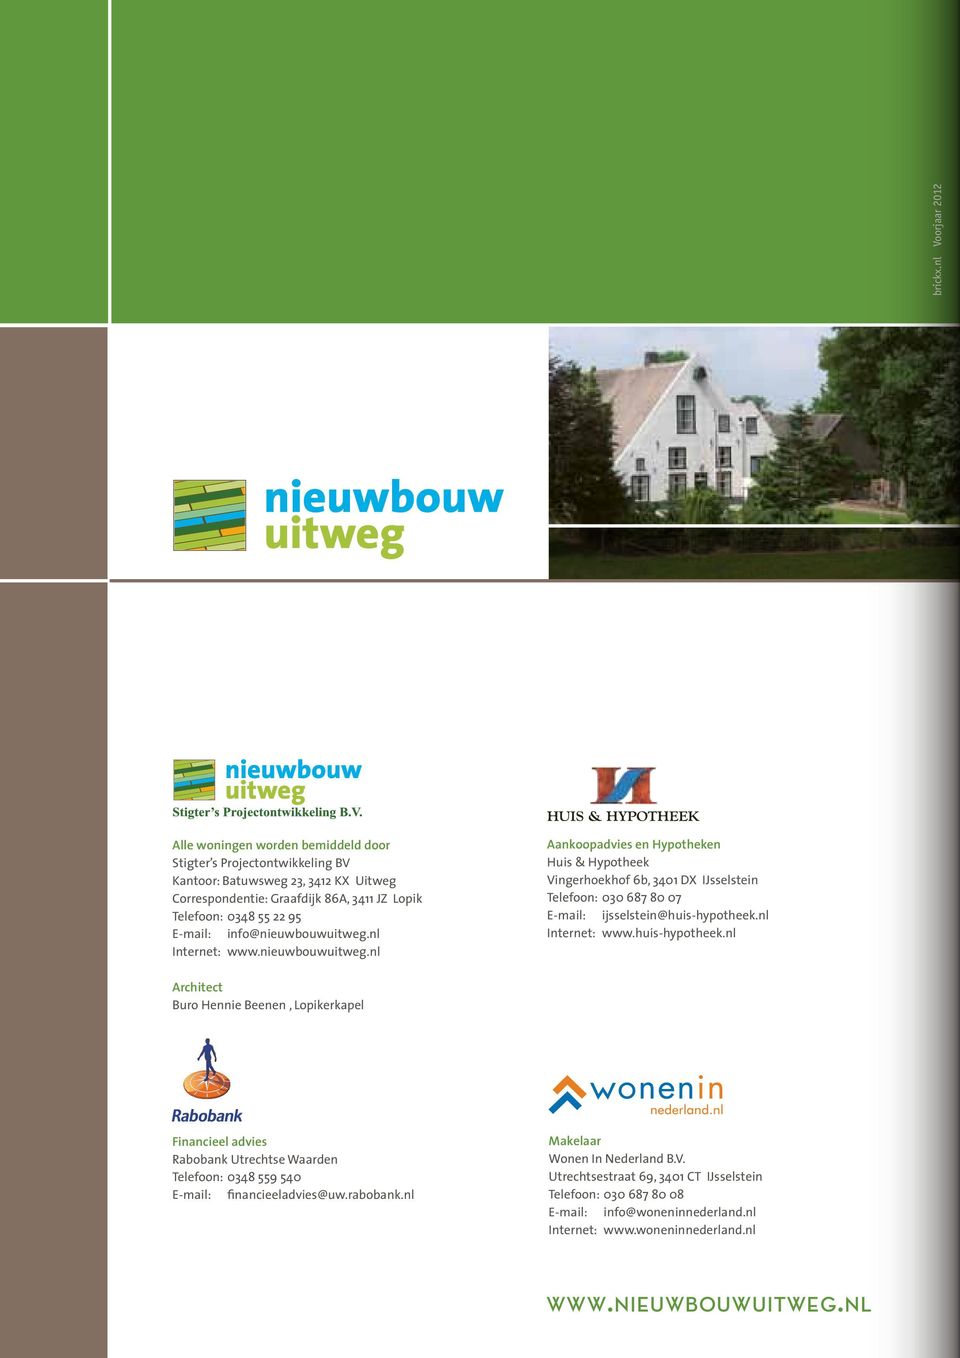 E-mail: info@nieuwbouwuitweg.nl Internet: www.nieuwbouwuitweg.nl Aankoopadvies en Hypotheken Huis & Hypotheek Vingerhoekhof 6b, 3401 DX IJsselstein Telefoon: 030 687 80 07 E-mail: ijsselstein@huis-hypotheek.